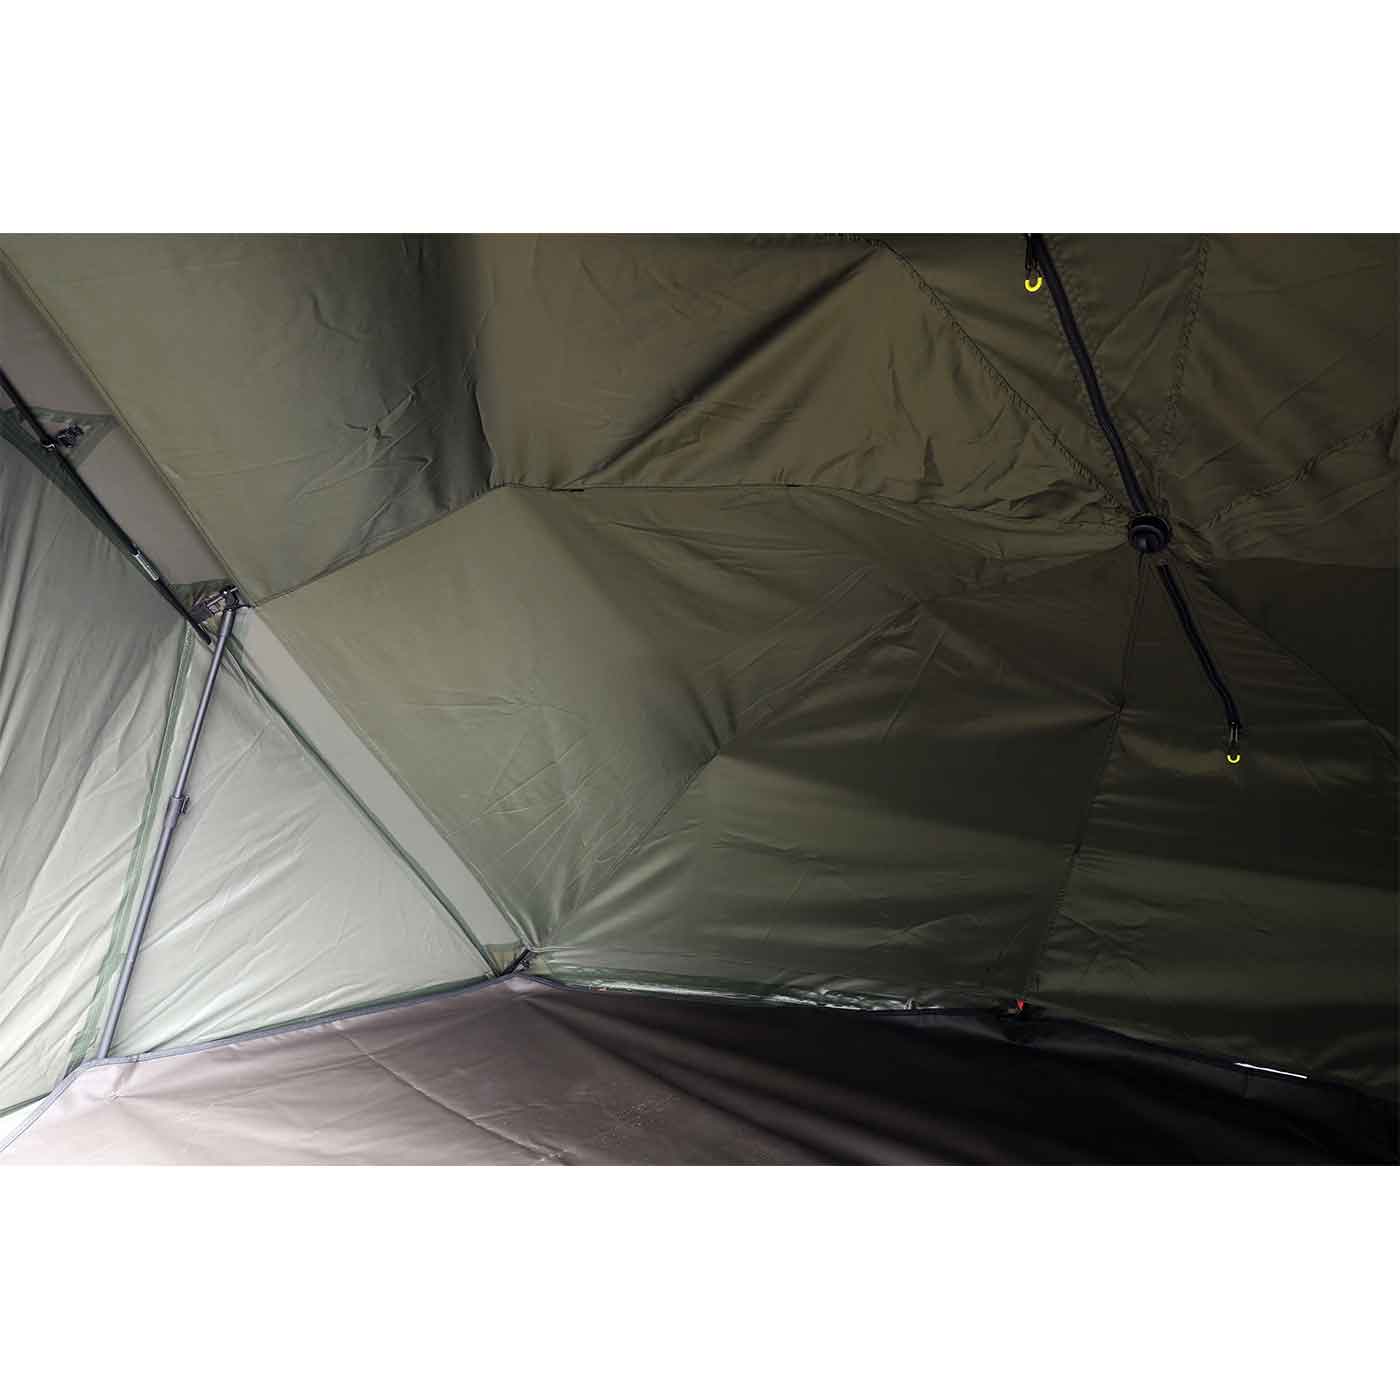 Pelzer XT umbrella tent 250cm - Green